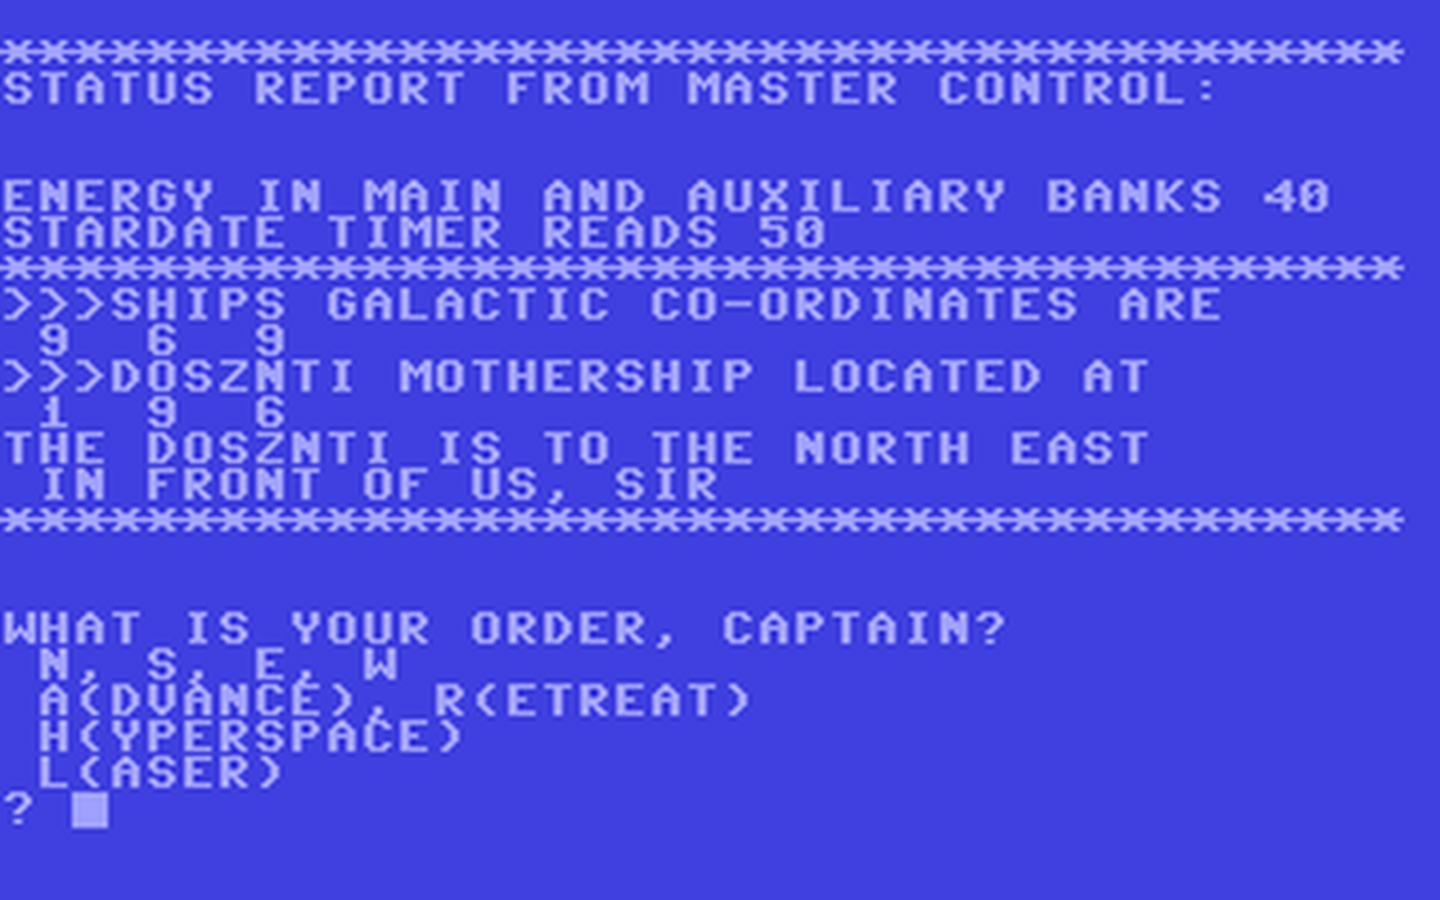 C64 GameBase Hyperwar Interface_Publications 1983